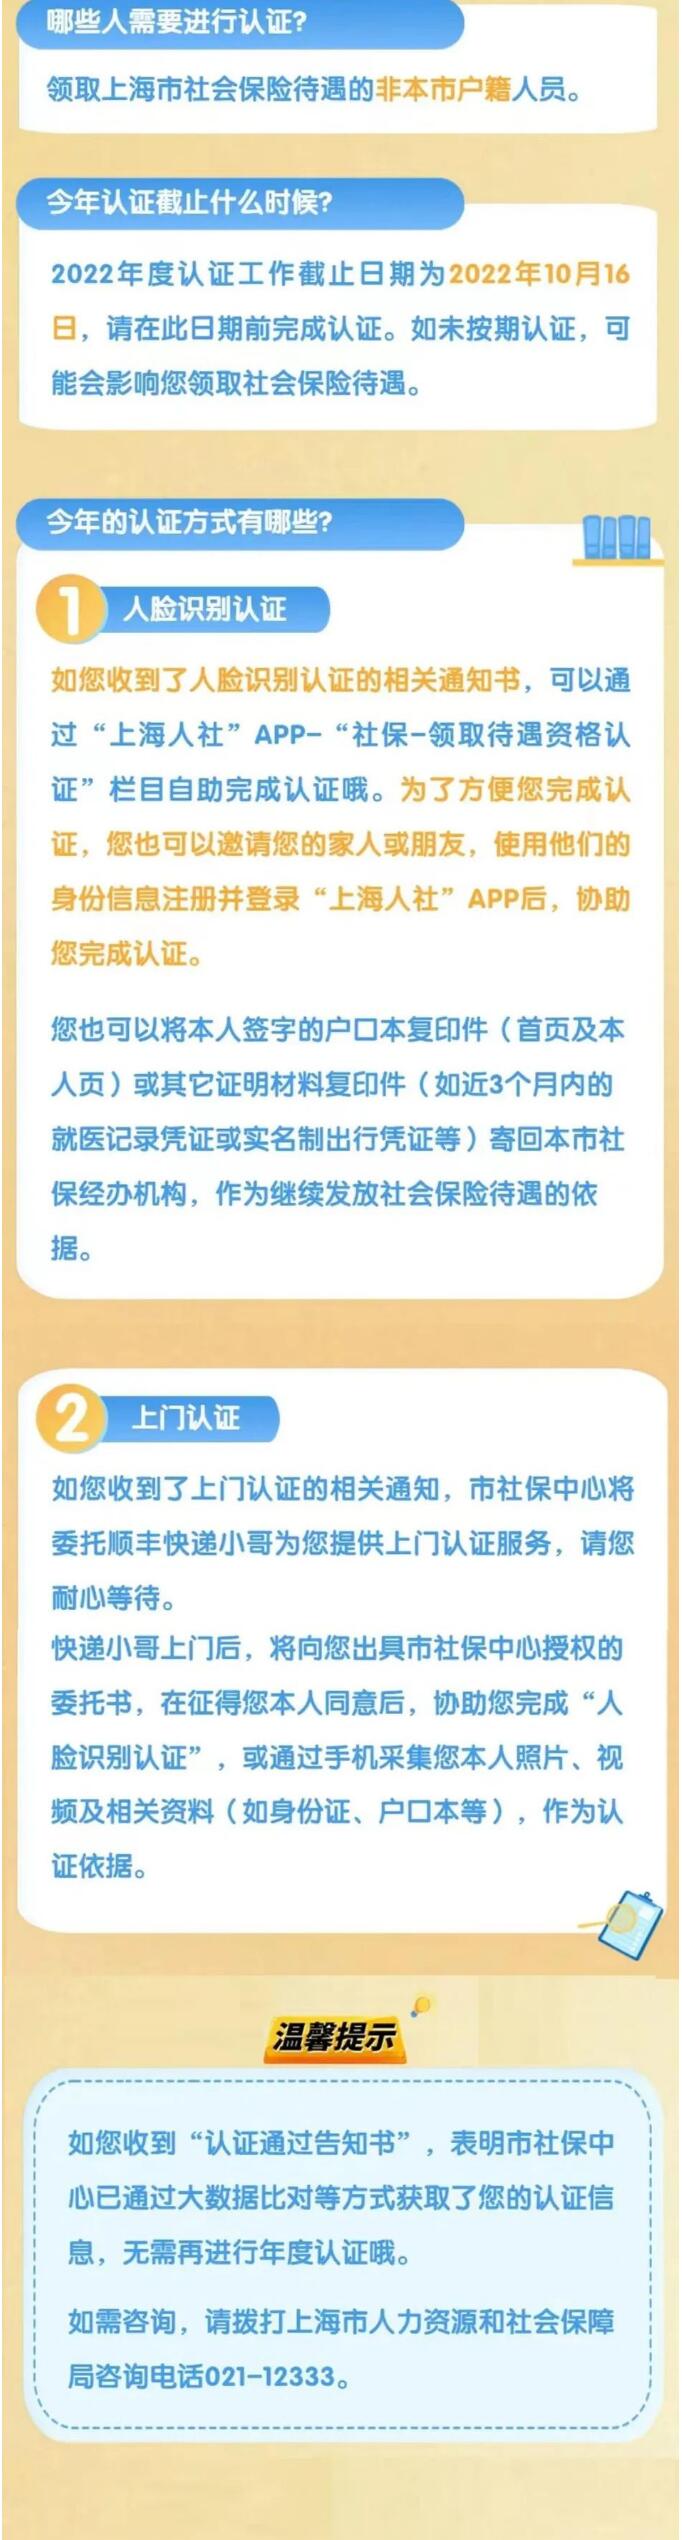 上海市2022年度领取社会保险待遇资格认证工作已经启动啦！